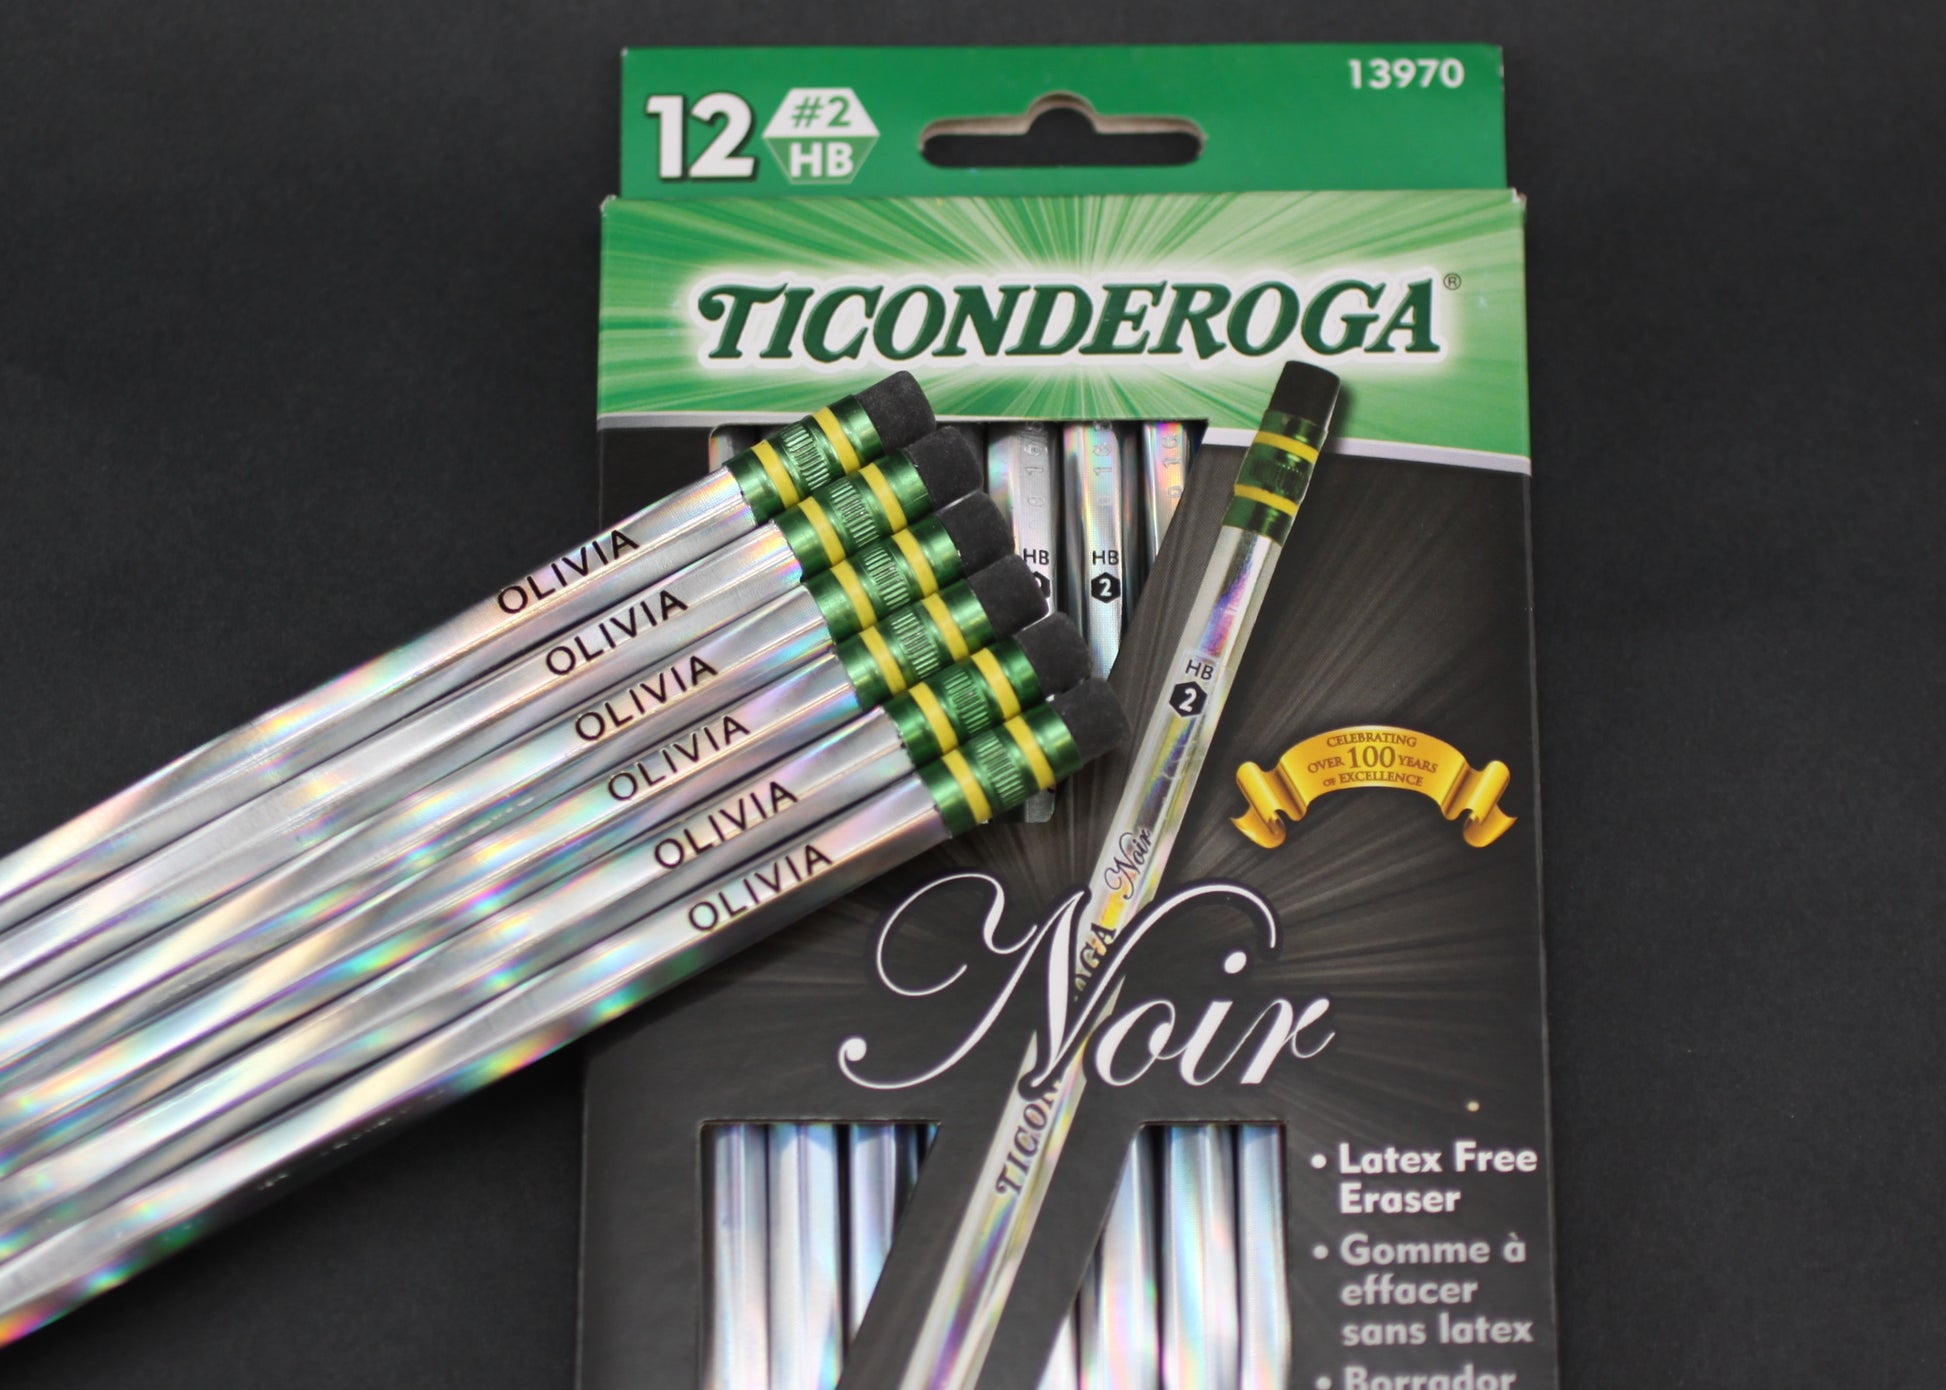 Ticonderoga Noir Pencils, Solid Black Wood, No. 2. HB - 12 pencils